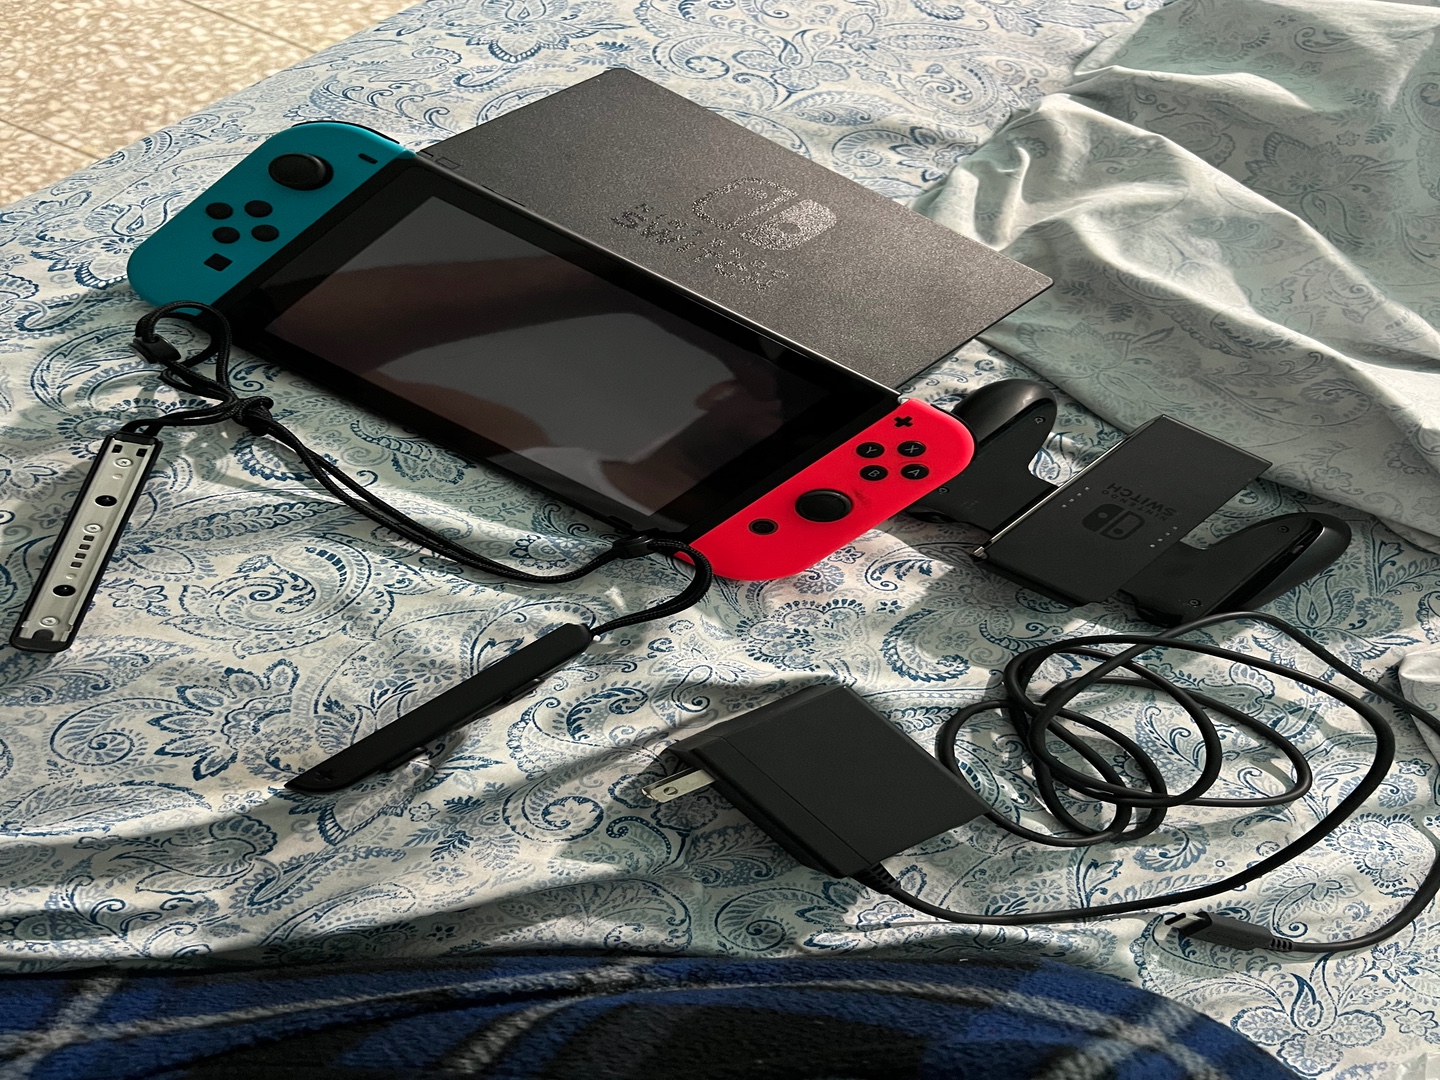 consolas y videojuegos - Nintendo swif 0